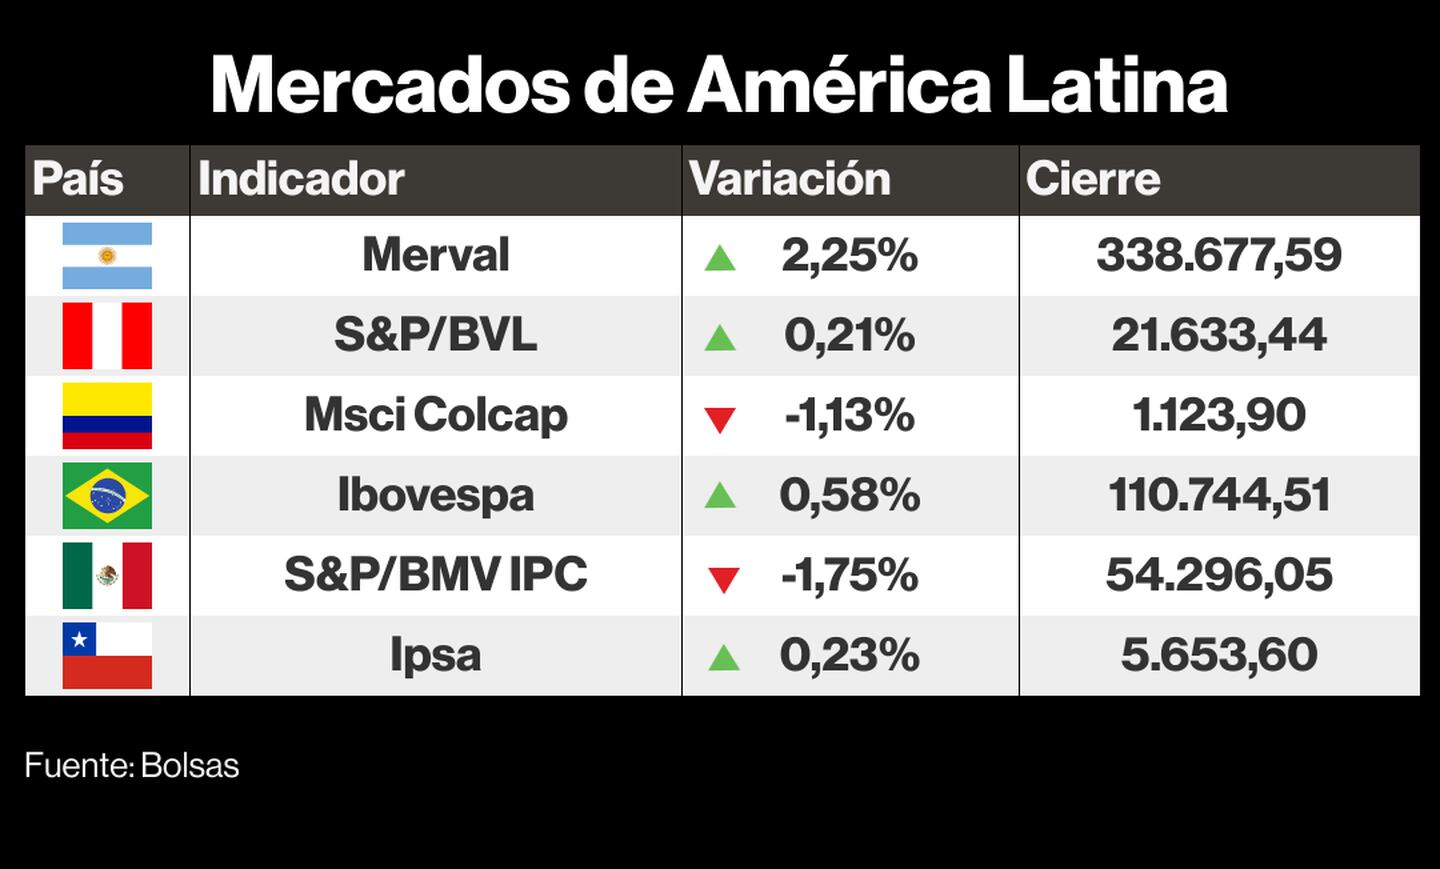 Mercados de América Latina.dfd